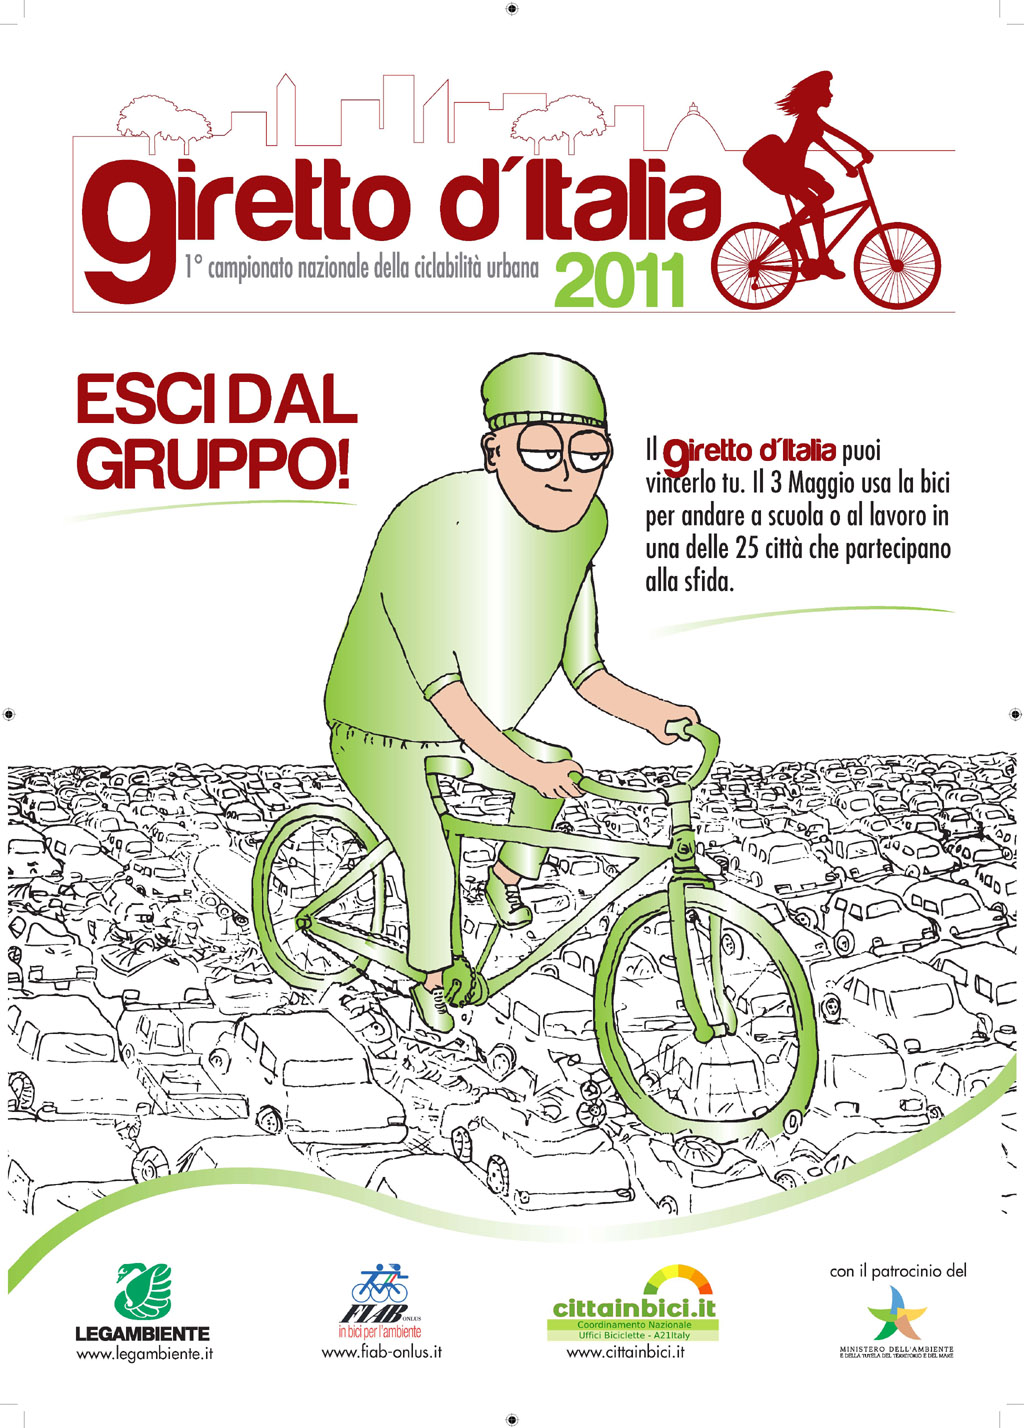 Giretto d’Italia, il campionato nazionale della ciclabilità urbana il 9 maggio anche a Torino